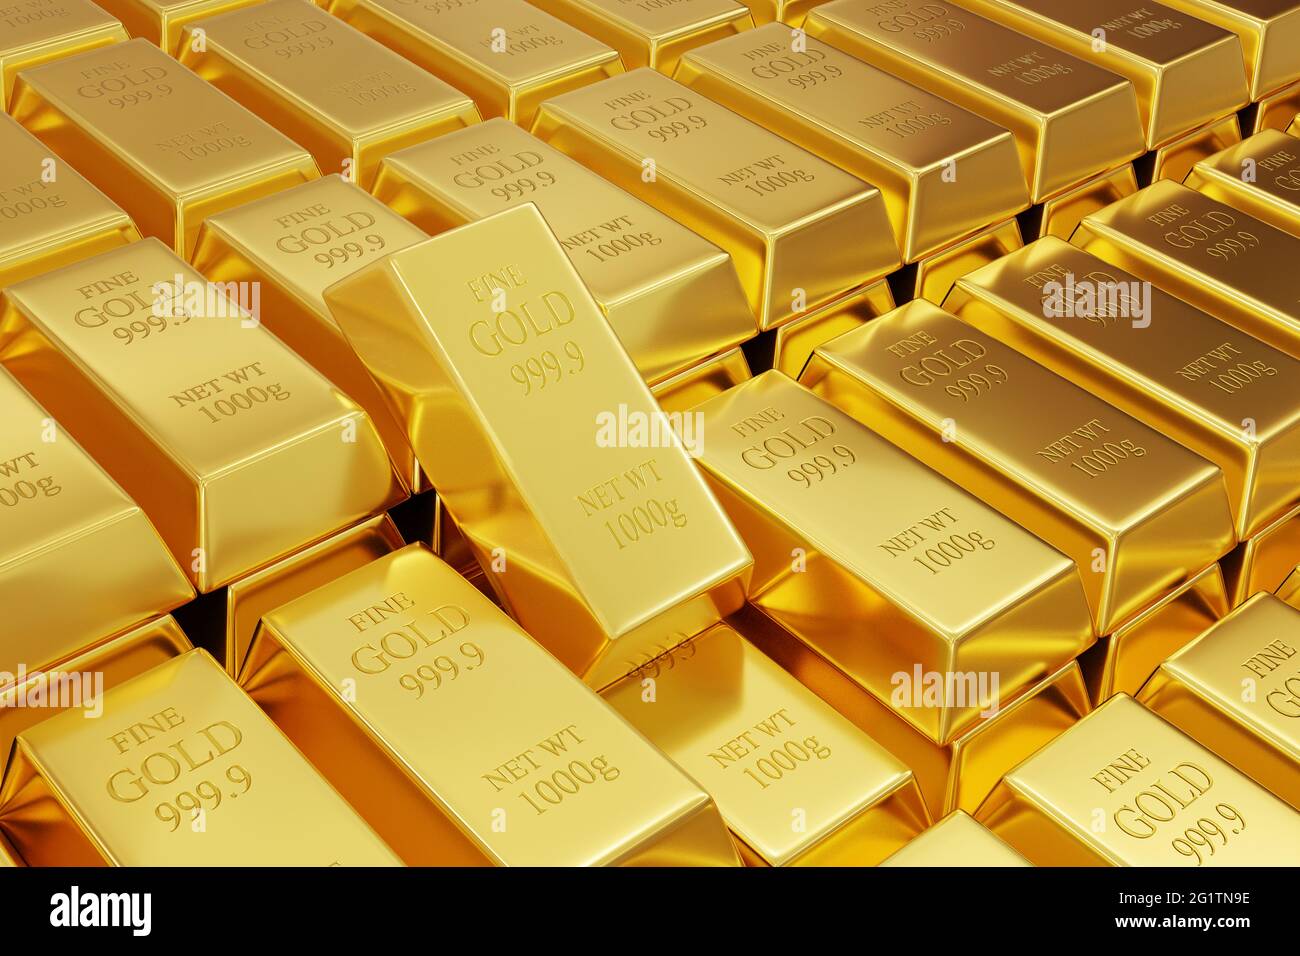 Viele 999.9 1kg Goldbarren füllen den gesamten Bildschirm und Hintergrund. Darstellung des Finanzkonzepts und der Darstellung von Vermögen und Reserven. Stockfoto